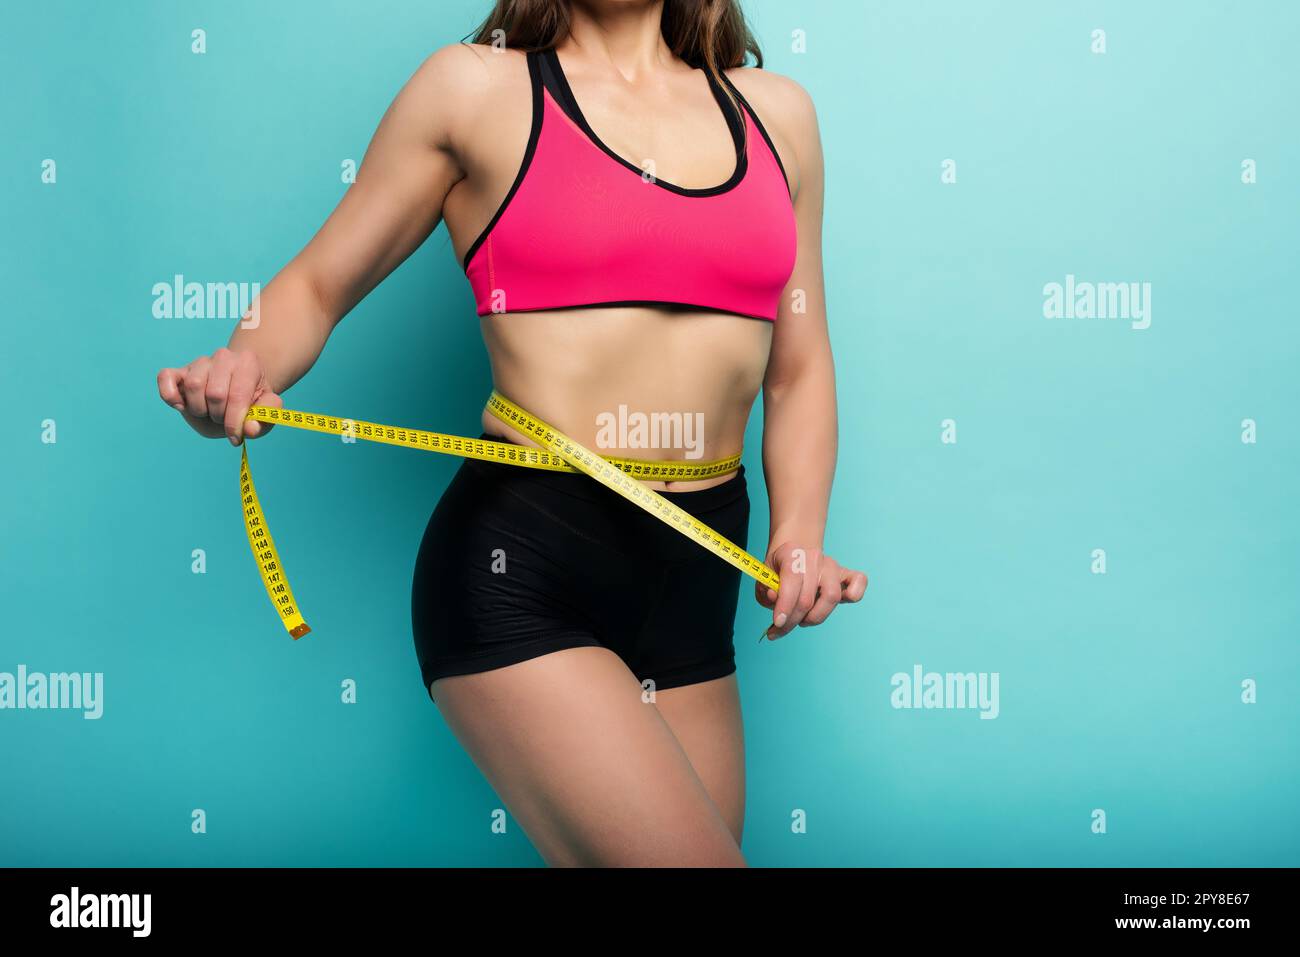 Determinated Sport Frau hat eine ausgezeichnete körperliche Form und messen mit dem Meter. Cyanfarbener Hintergrund Stockfoto